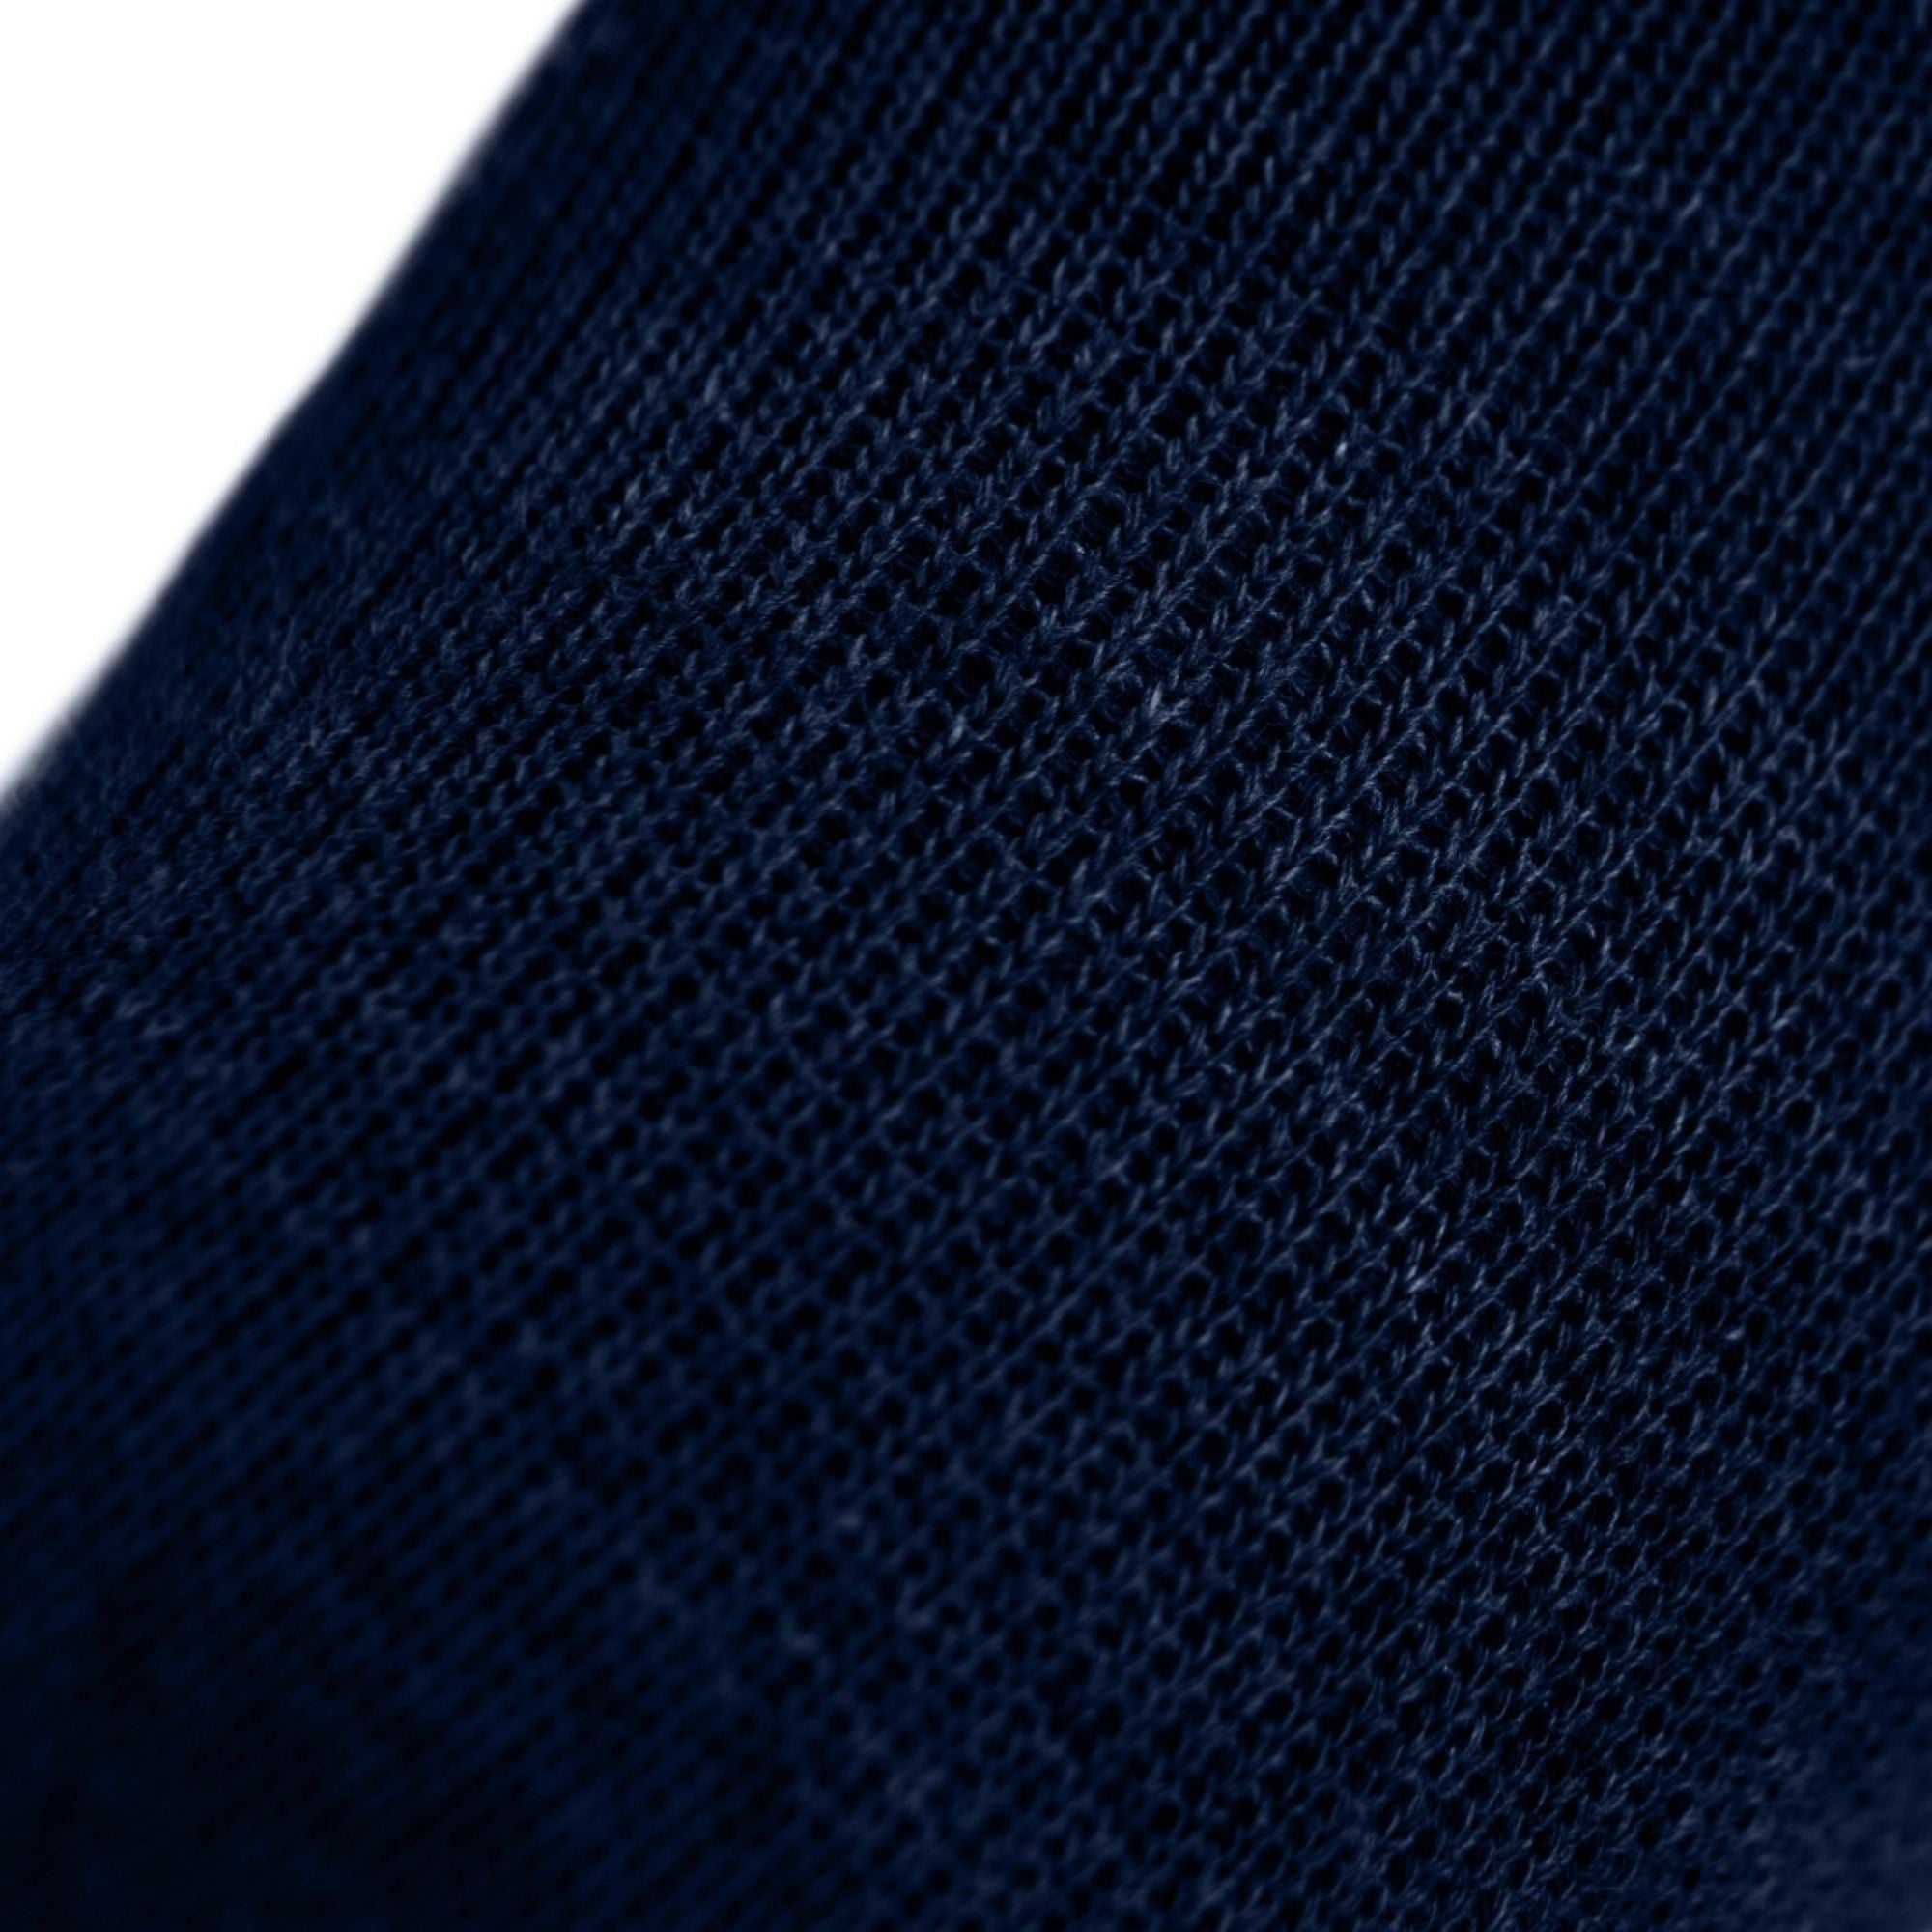 3-pack Sport-calze con dita in Coolmax e cotone di Knitido in blu navy